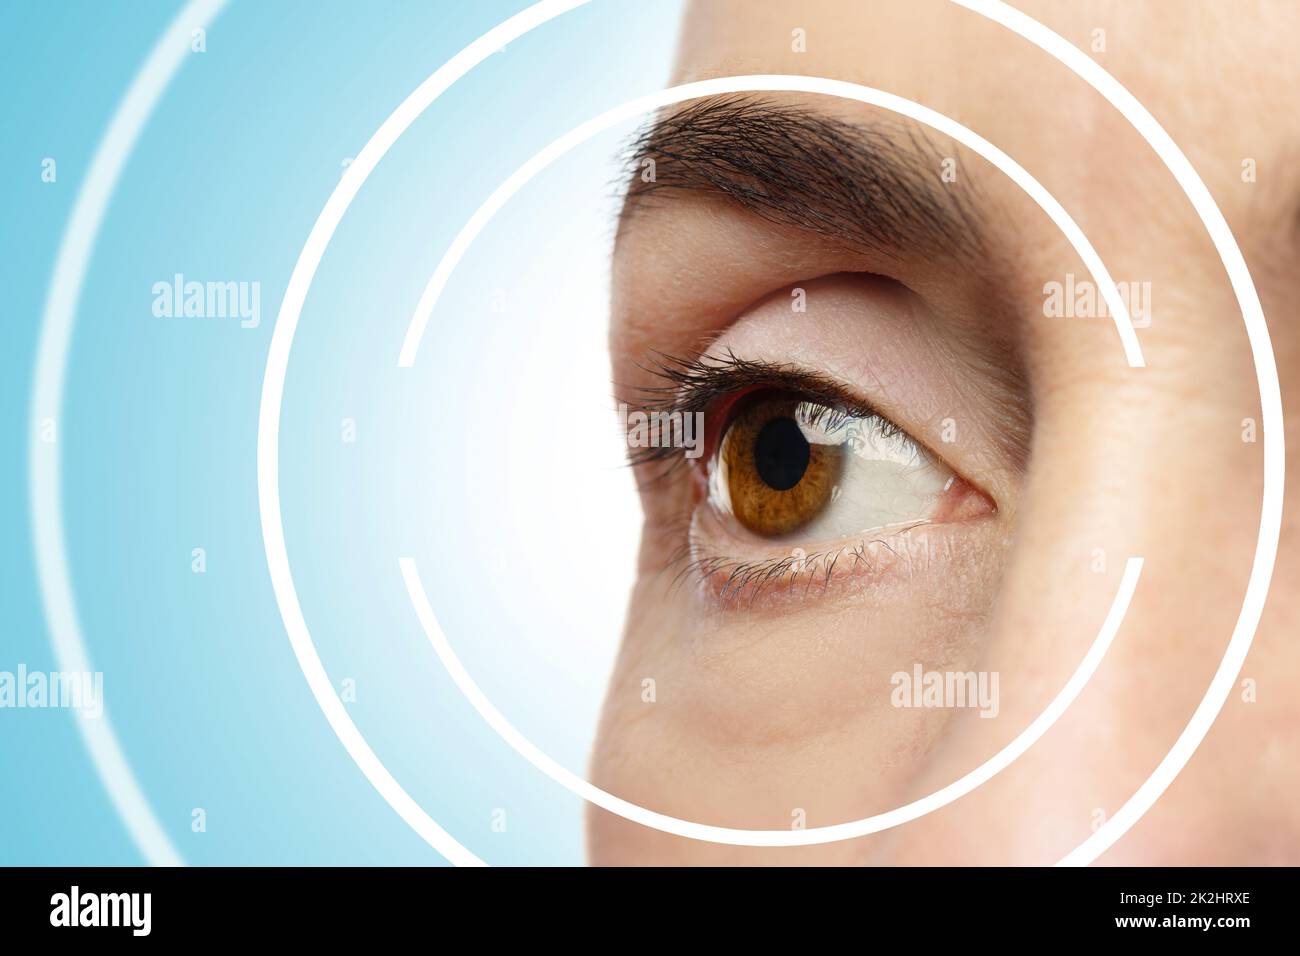 Concepts de chirurgie oculaire au laser ou de vérification de l'acuité visuelle Banque D'Images